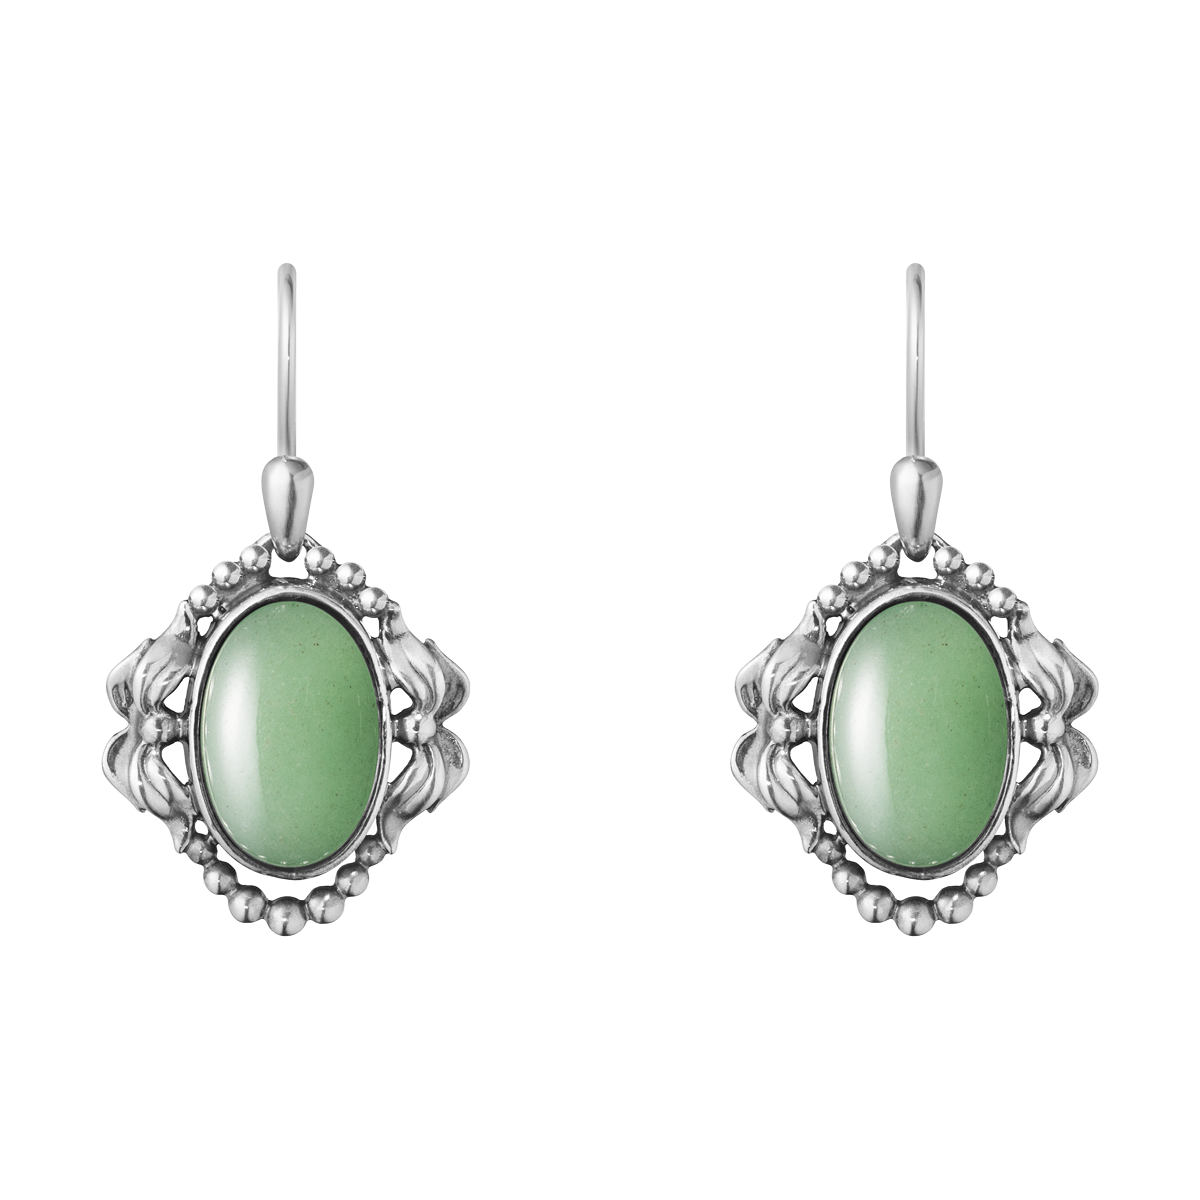 ceremony earrings green jade earrings vintage earrings elegant earrings silver and jade earrings Jade earrings